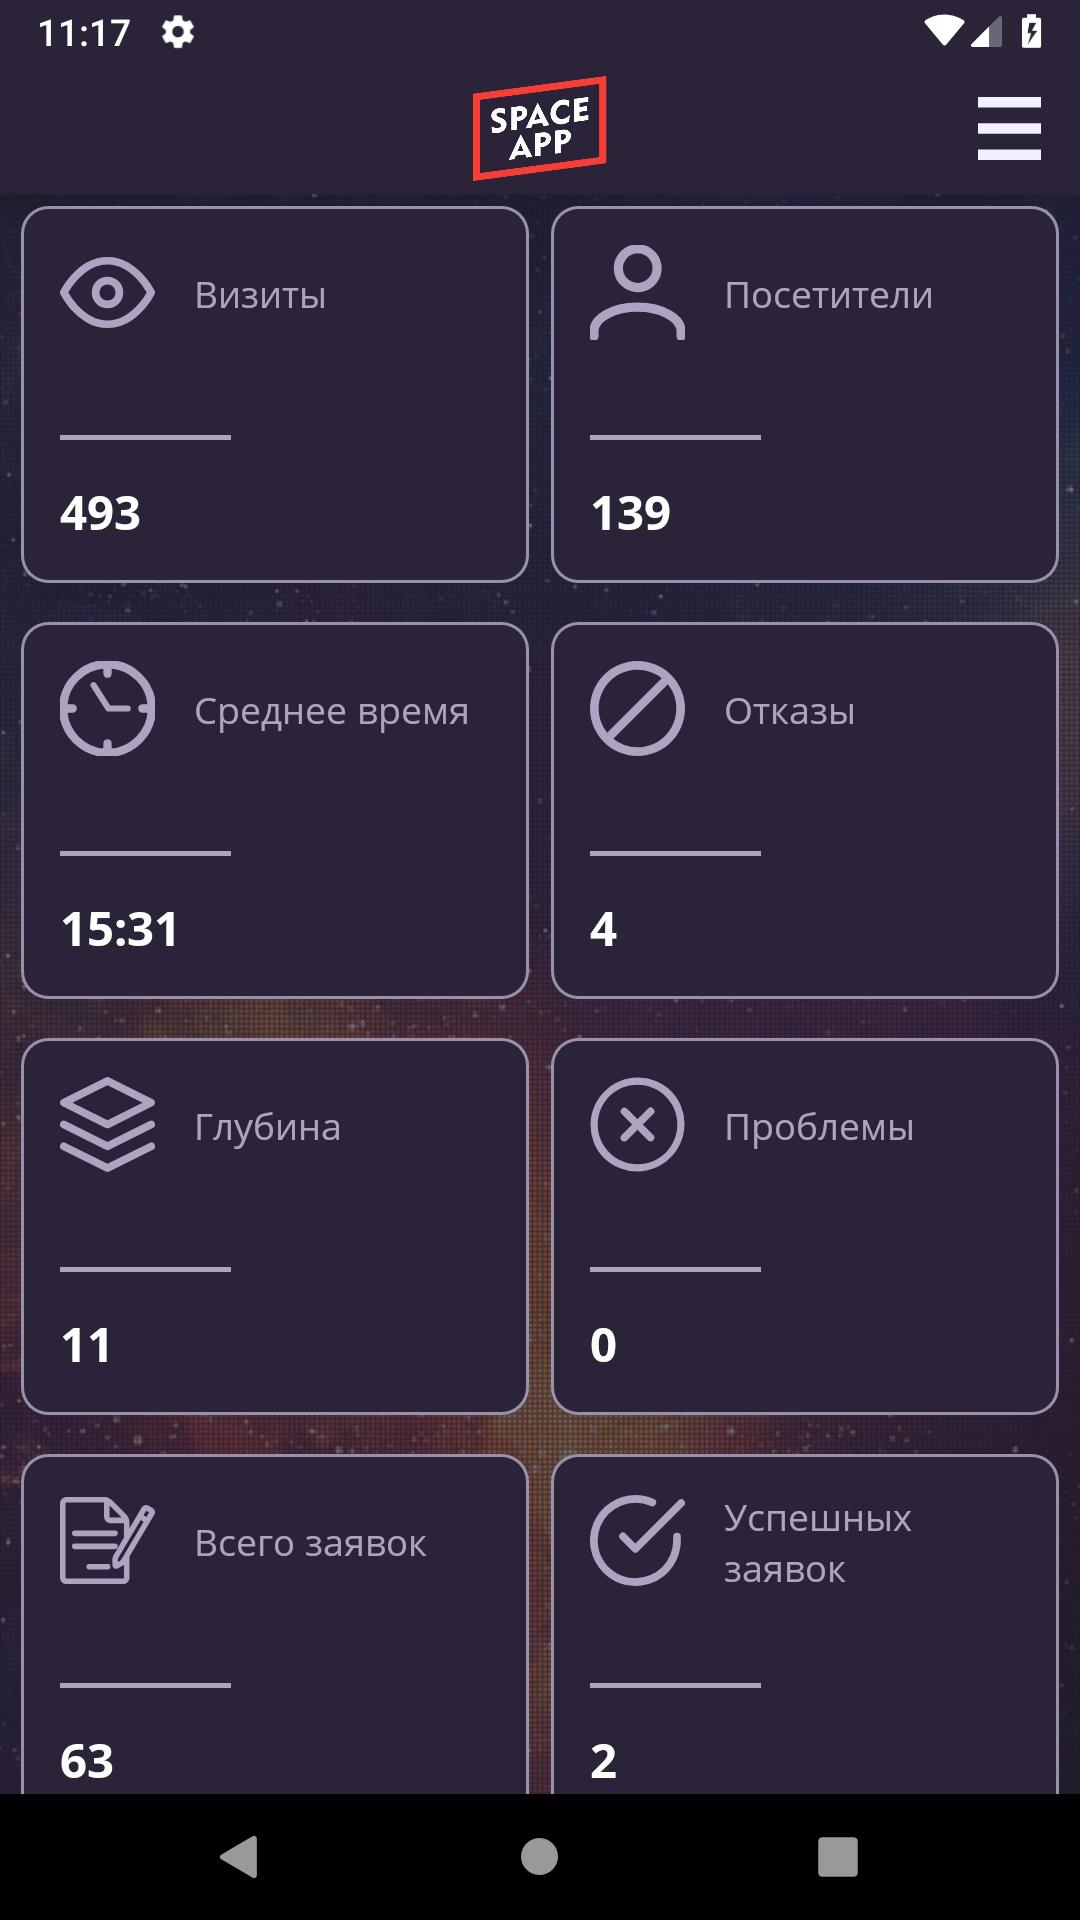 Space 1 приложение. Space apps Иваново. Приложение космос 600 р.